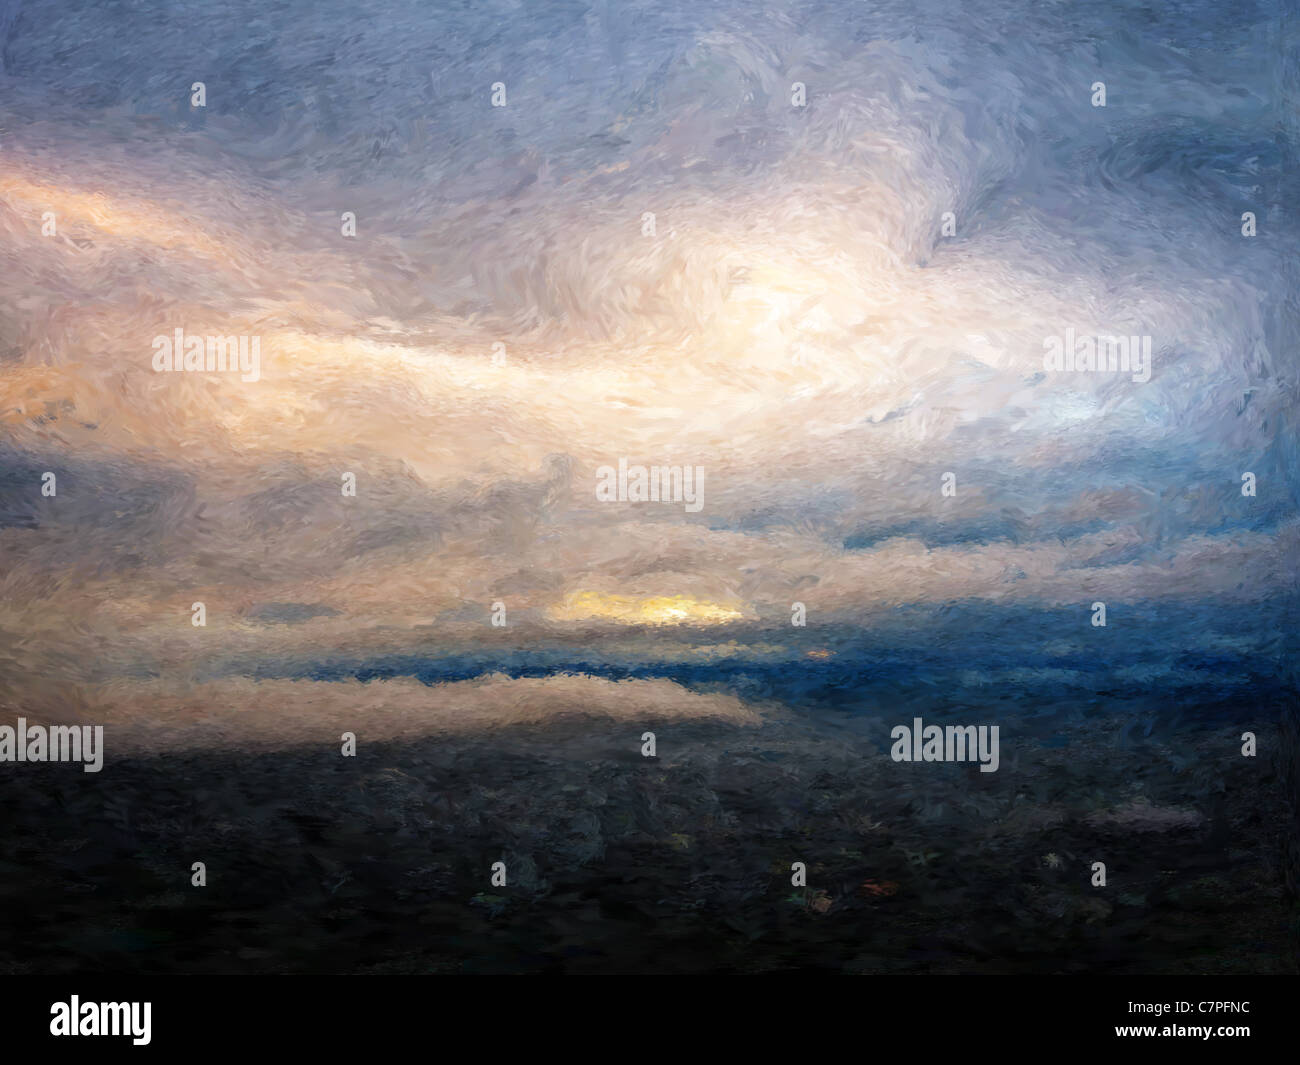 La peinture de style impressionniste d'un paysage nuageux aube Banque D'Images